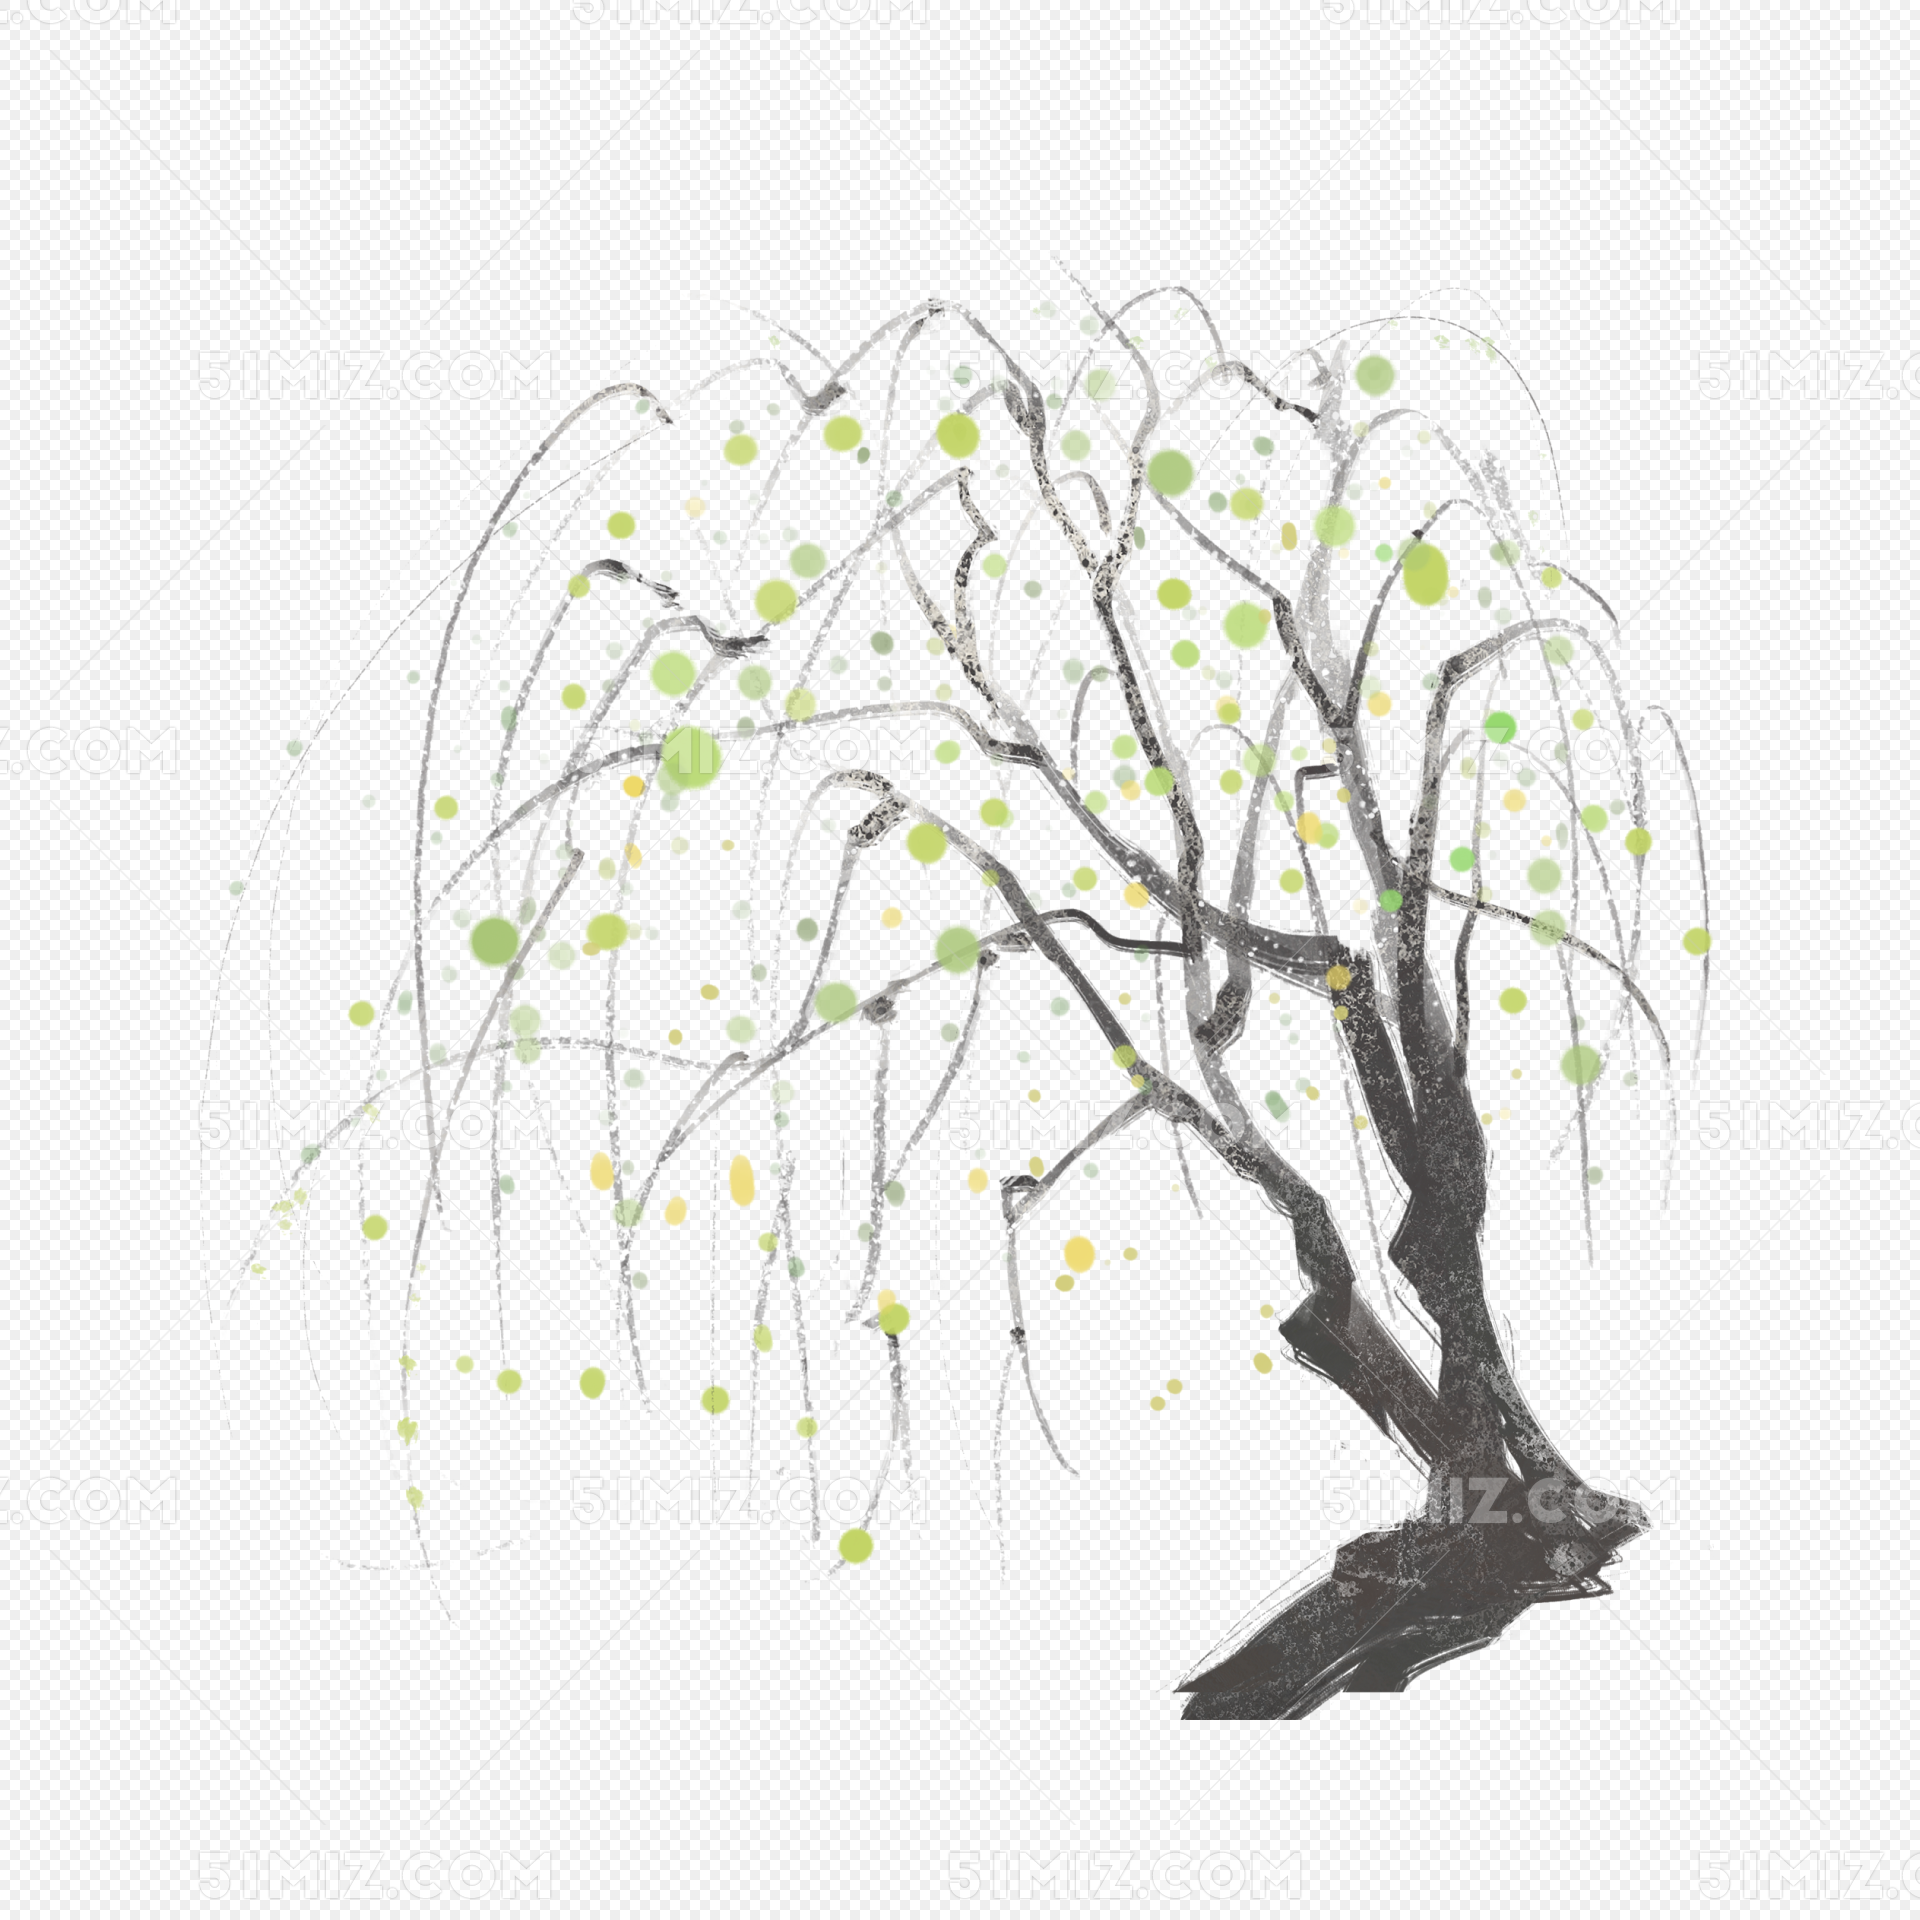 Hand Drawn Botanical PNG Transparent, Cartoon Hand Drawn Botanical Illustration Willow, Cartoon ...